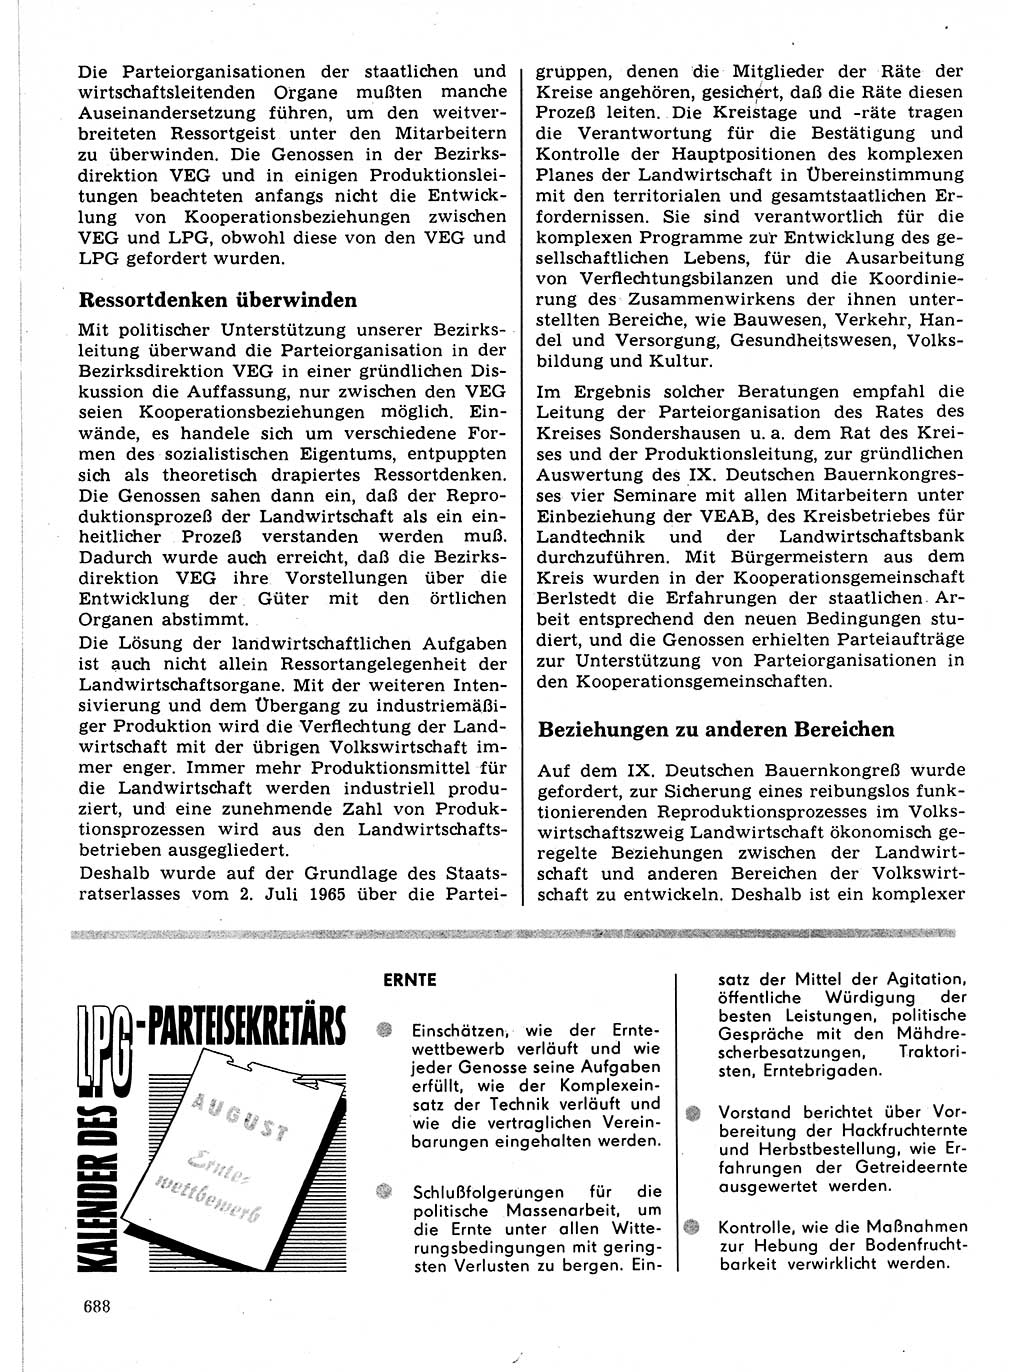 Neuer Weg (NW), Organ des Zentralkomitees (ZK) der SED (Sozialistische Einheitspartei Deutschlands) für Fragen des Parteilebens, 21. Jahrgang [Deutsche Demokratische Republik (DDR)] 1966, Seite 688 (NW ZK SED DDR 1966, S. 688)